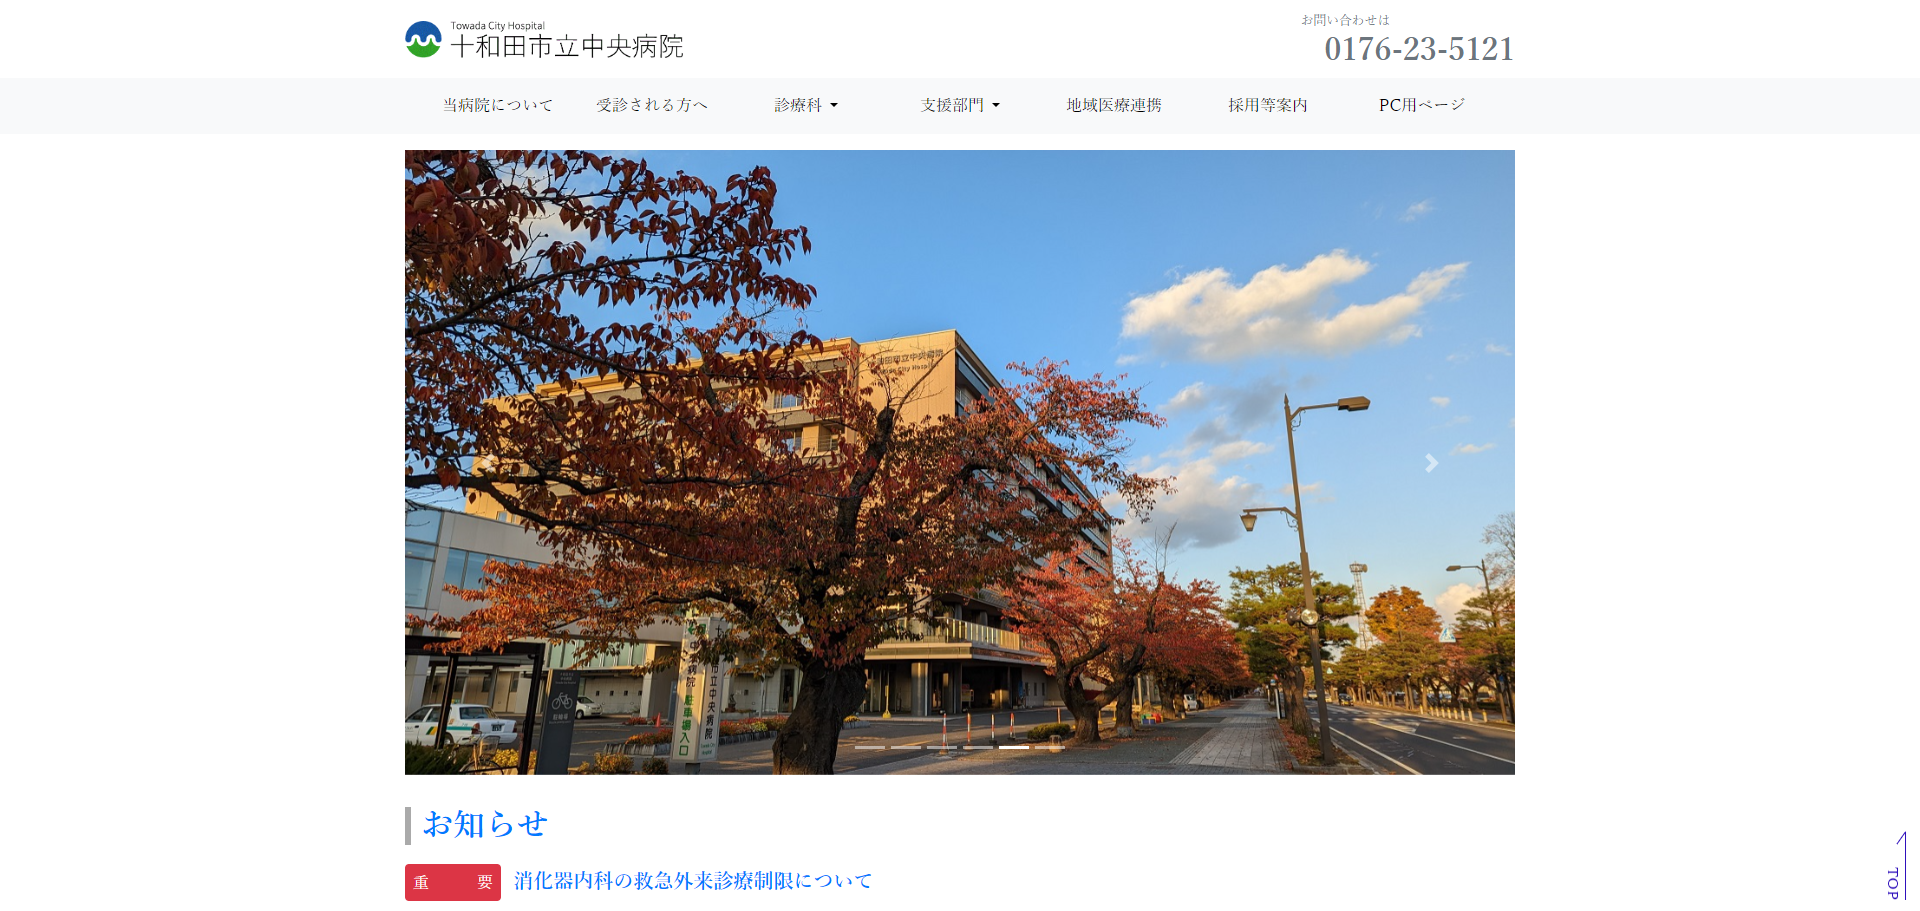 十和田市立中央病院の統合ネットワークシステム導入